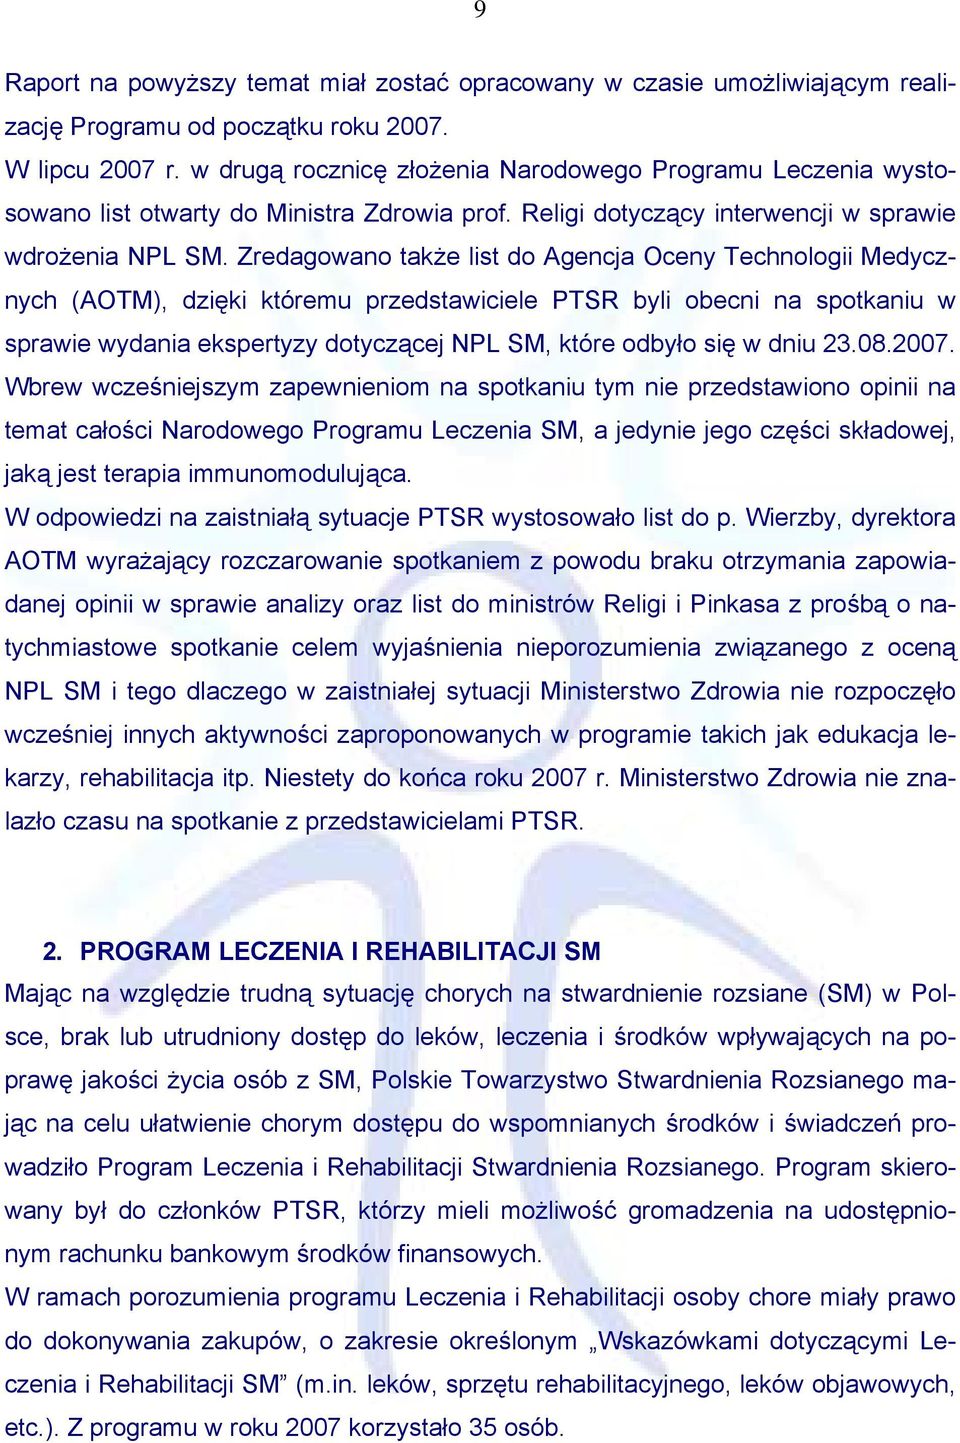 Zredagowano także list do Agencja Oceny Technologii Medycznych (AOTM), dzięki któremu przedstawiciele PTSR byli obecni na spotkaniu w sprawie wydania ekspertyzy dotyczącej NPL SM, które odbyło się w